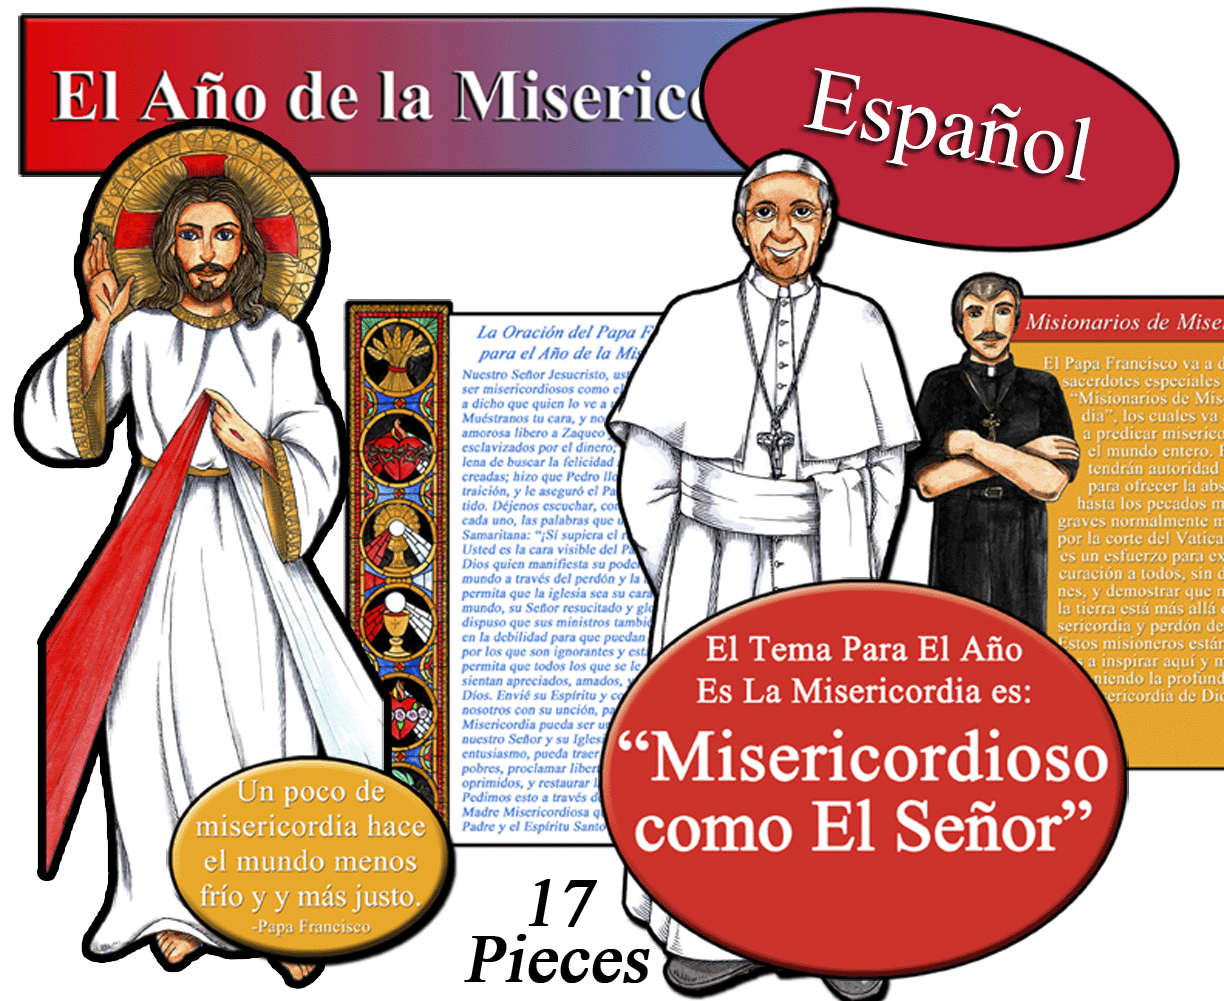 Spanish - Year of Mercy